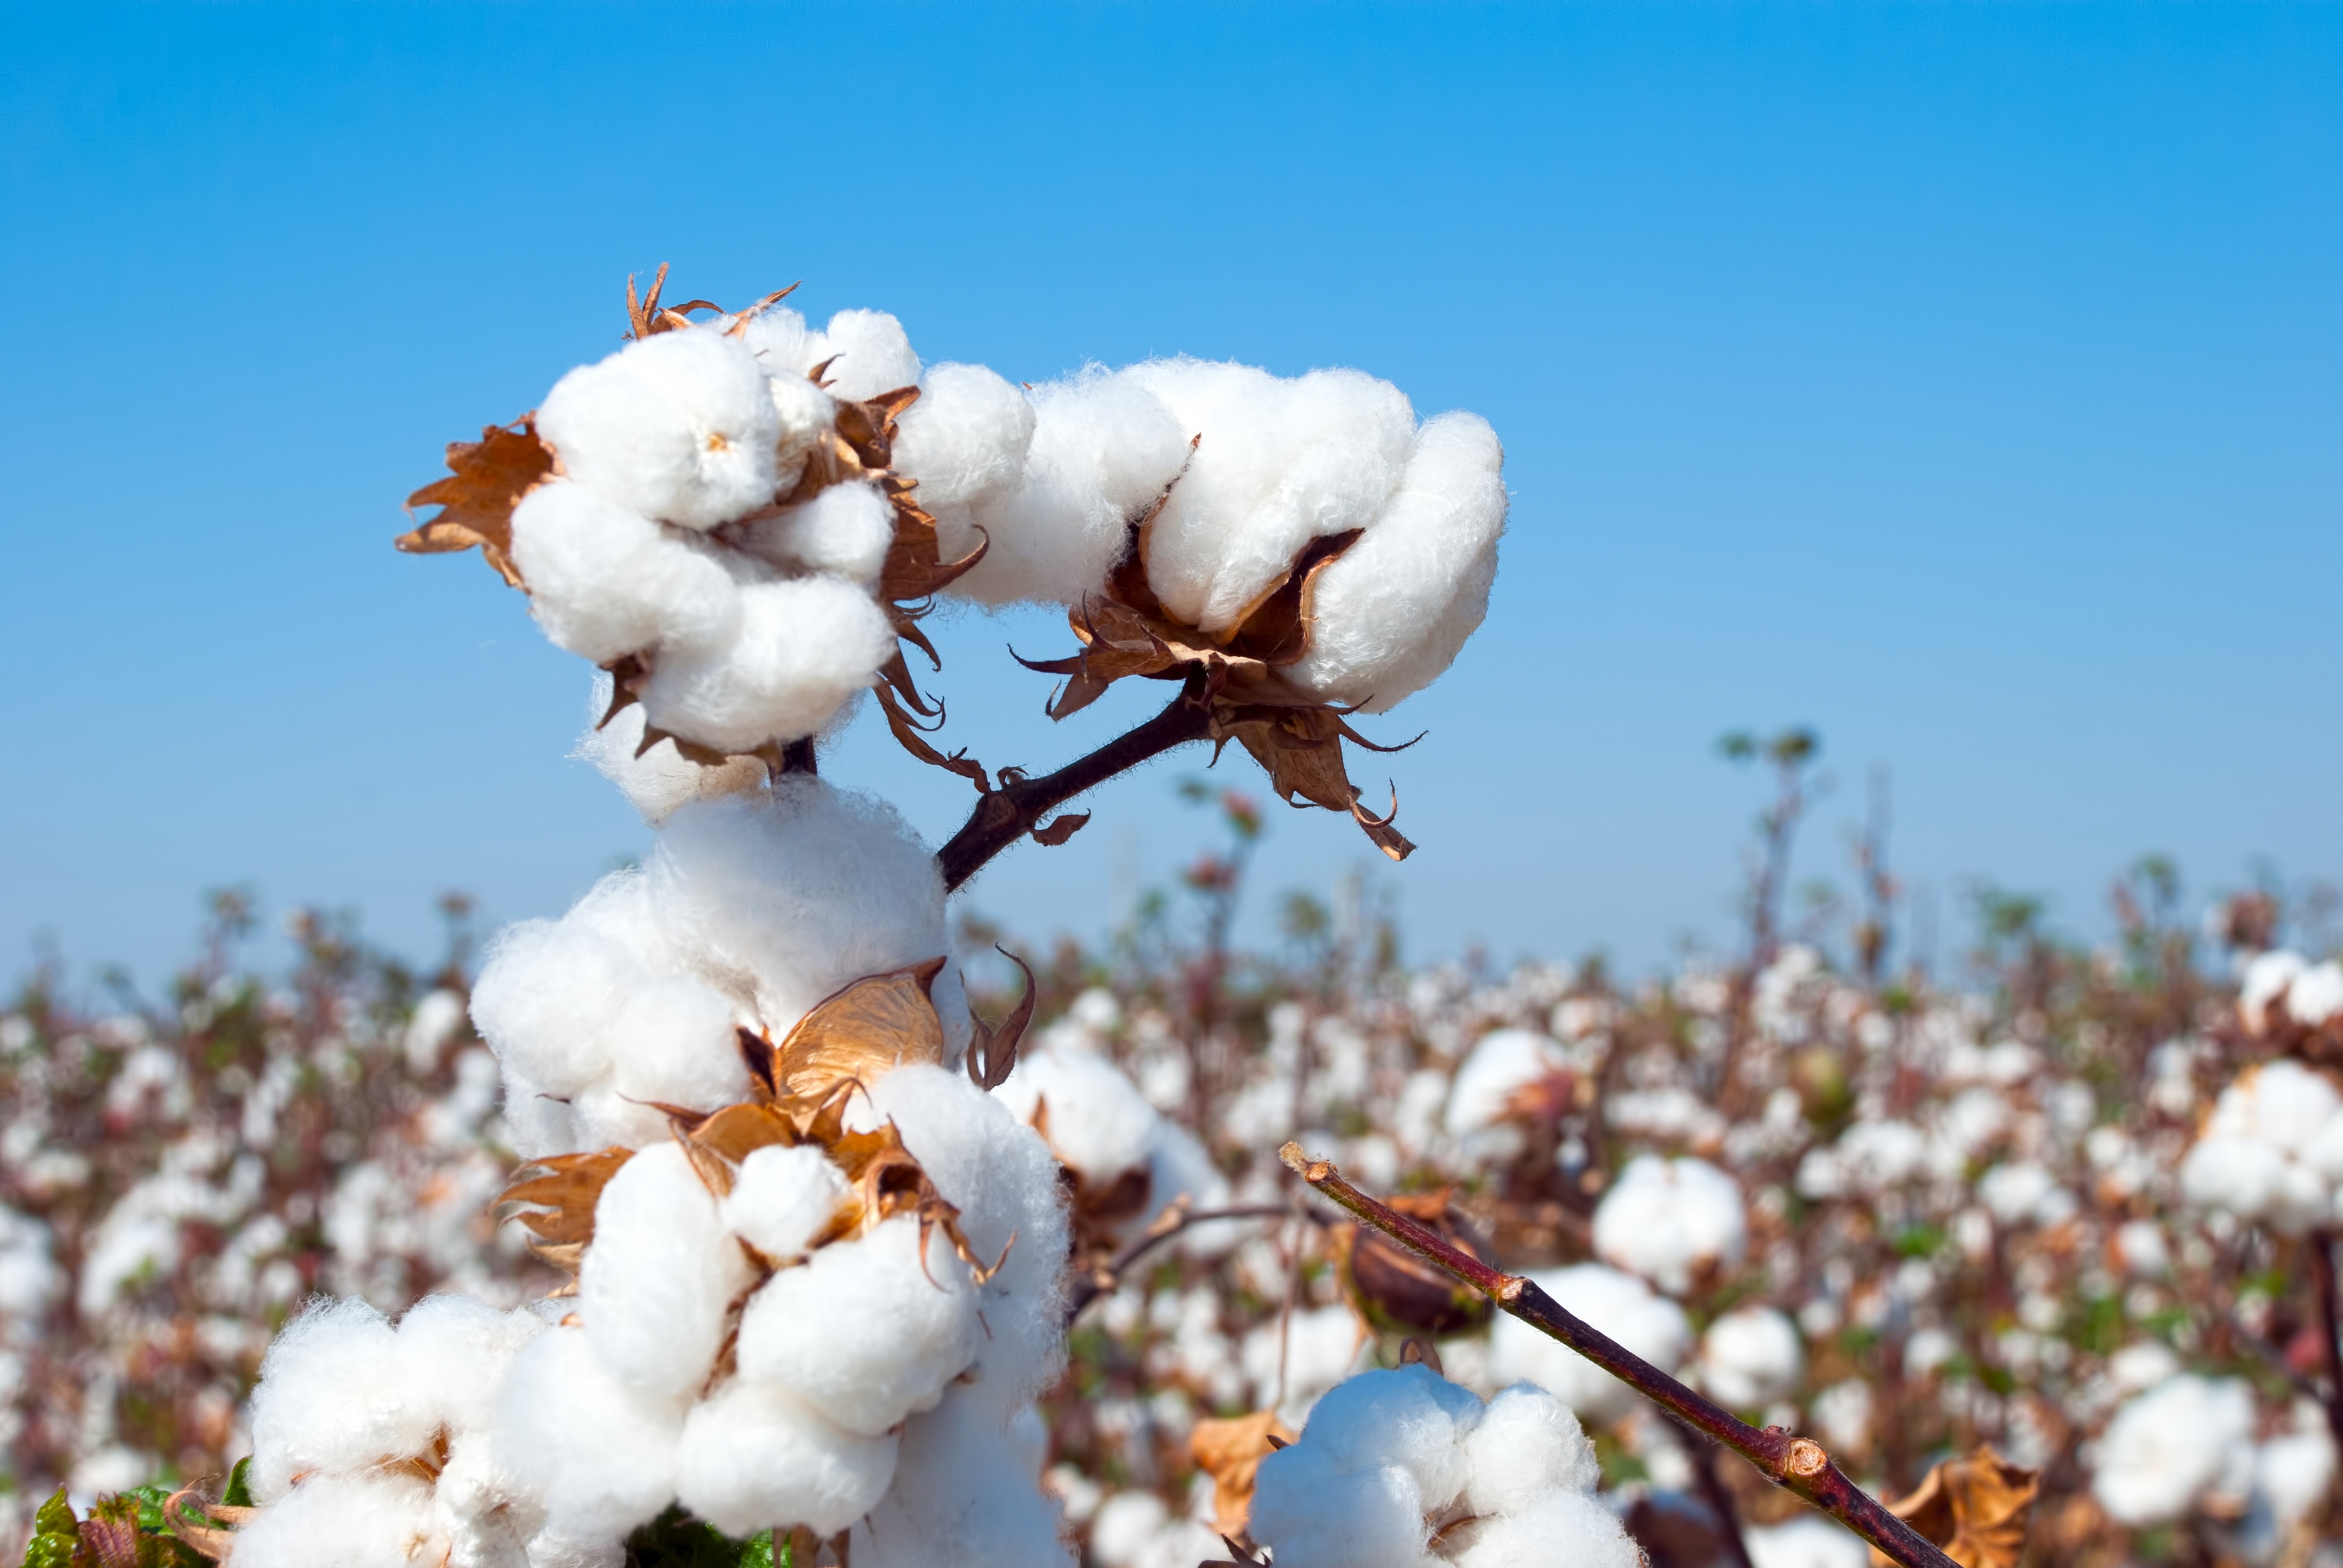 Ascenza lança no Brasil inseticida para o controle da falsa-medideira no algodão